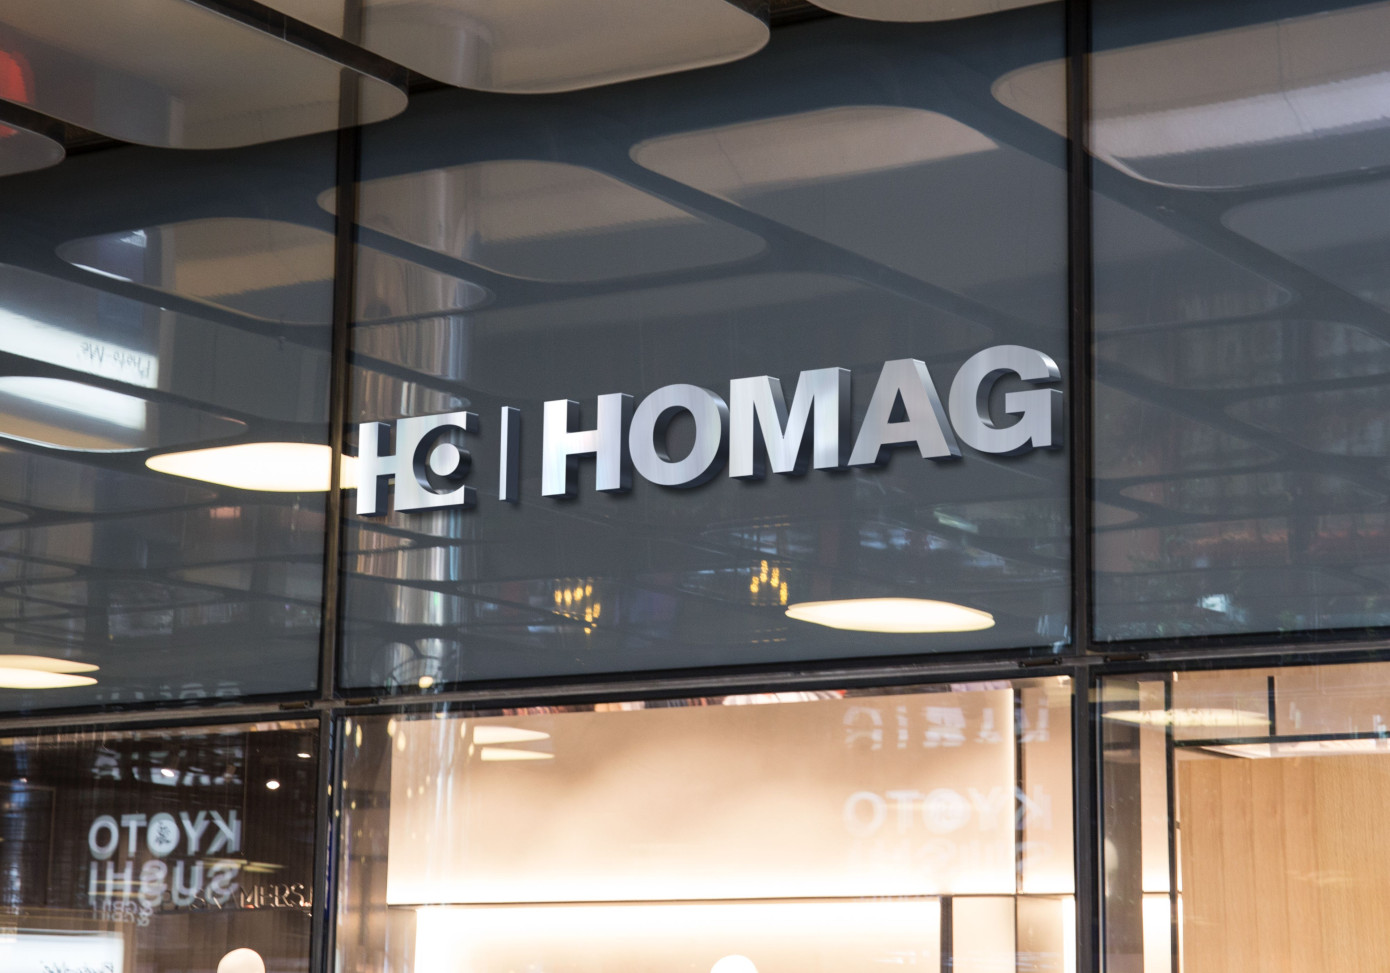 Homag"s sales revenues increased by 1.4%